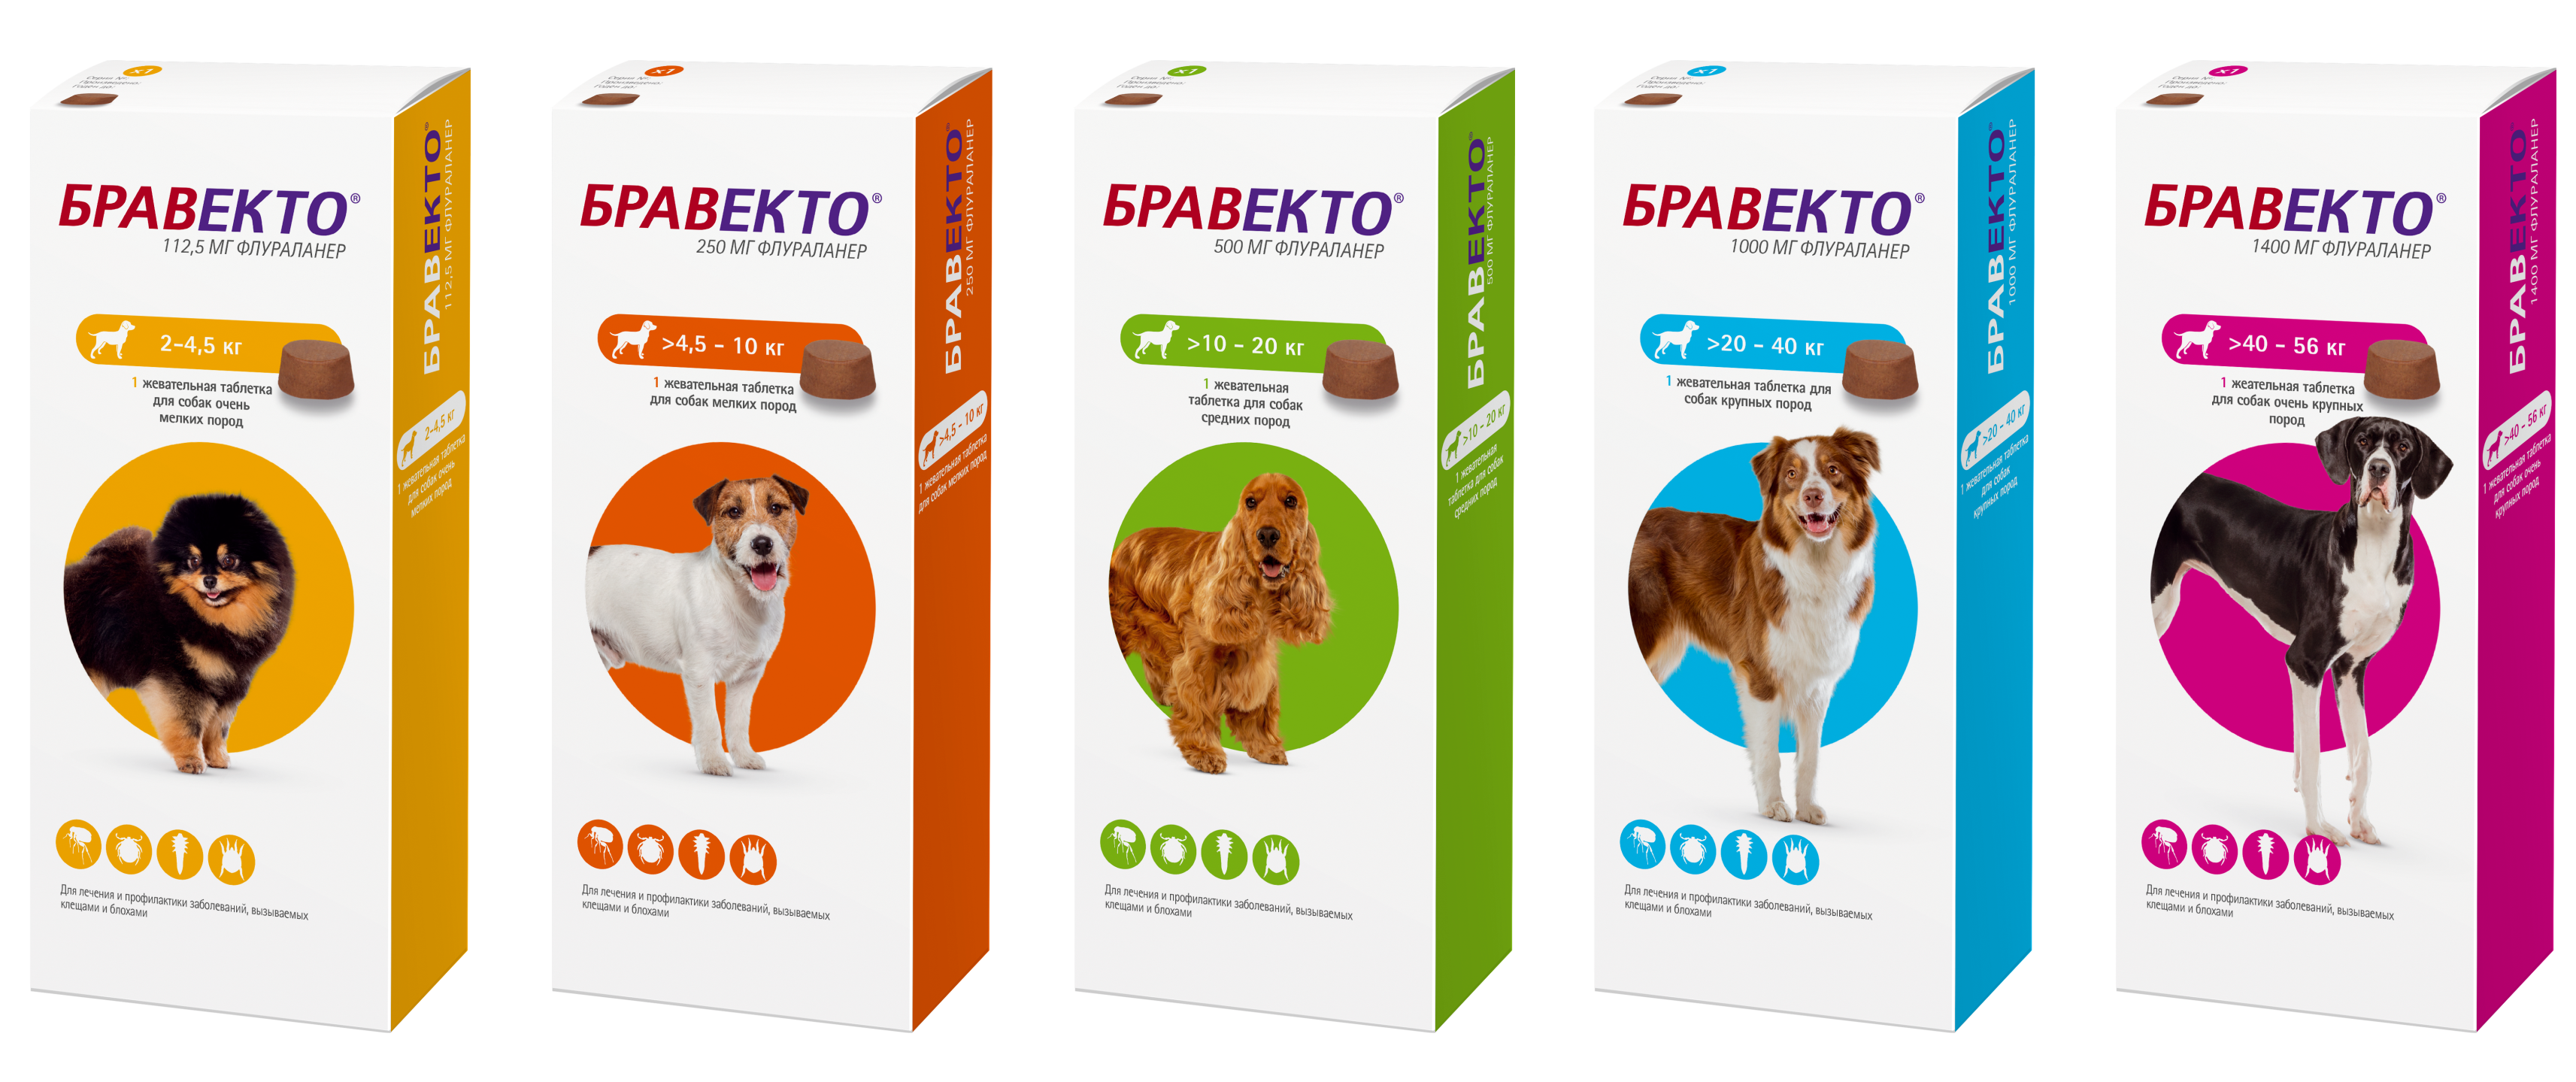 Бравекто для собак купить 5 10. Intervet Бравекто жевательная таблетка для собак 4,5-10кг 250мг. Бравекто для собак 20-40 кг таблетки. Таблетки от клещей для собак Бравекто 20-40 кг. Бравекто таблетка для собак 4 5 10 кг.